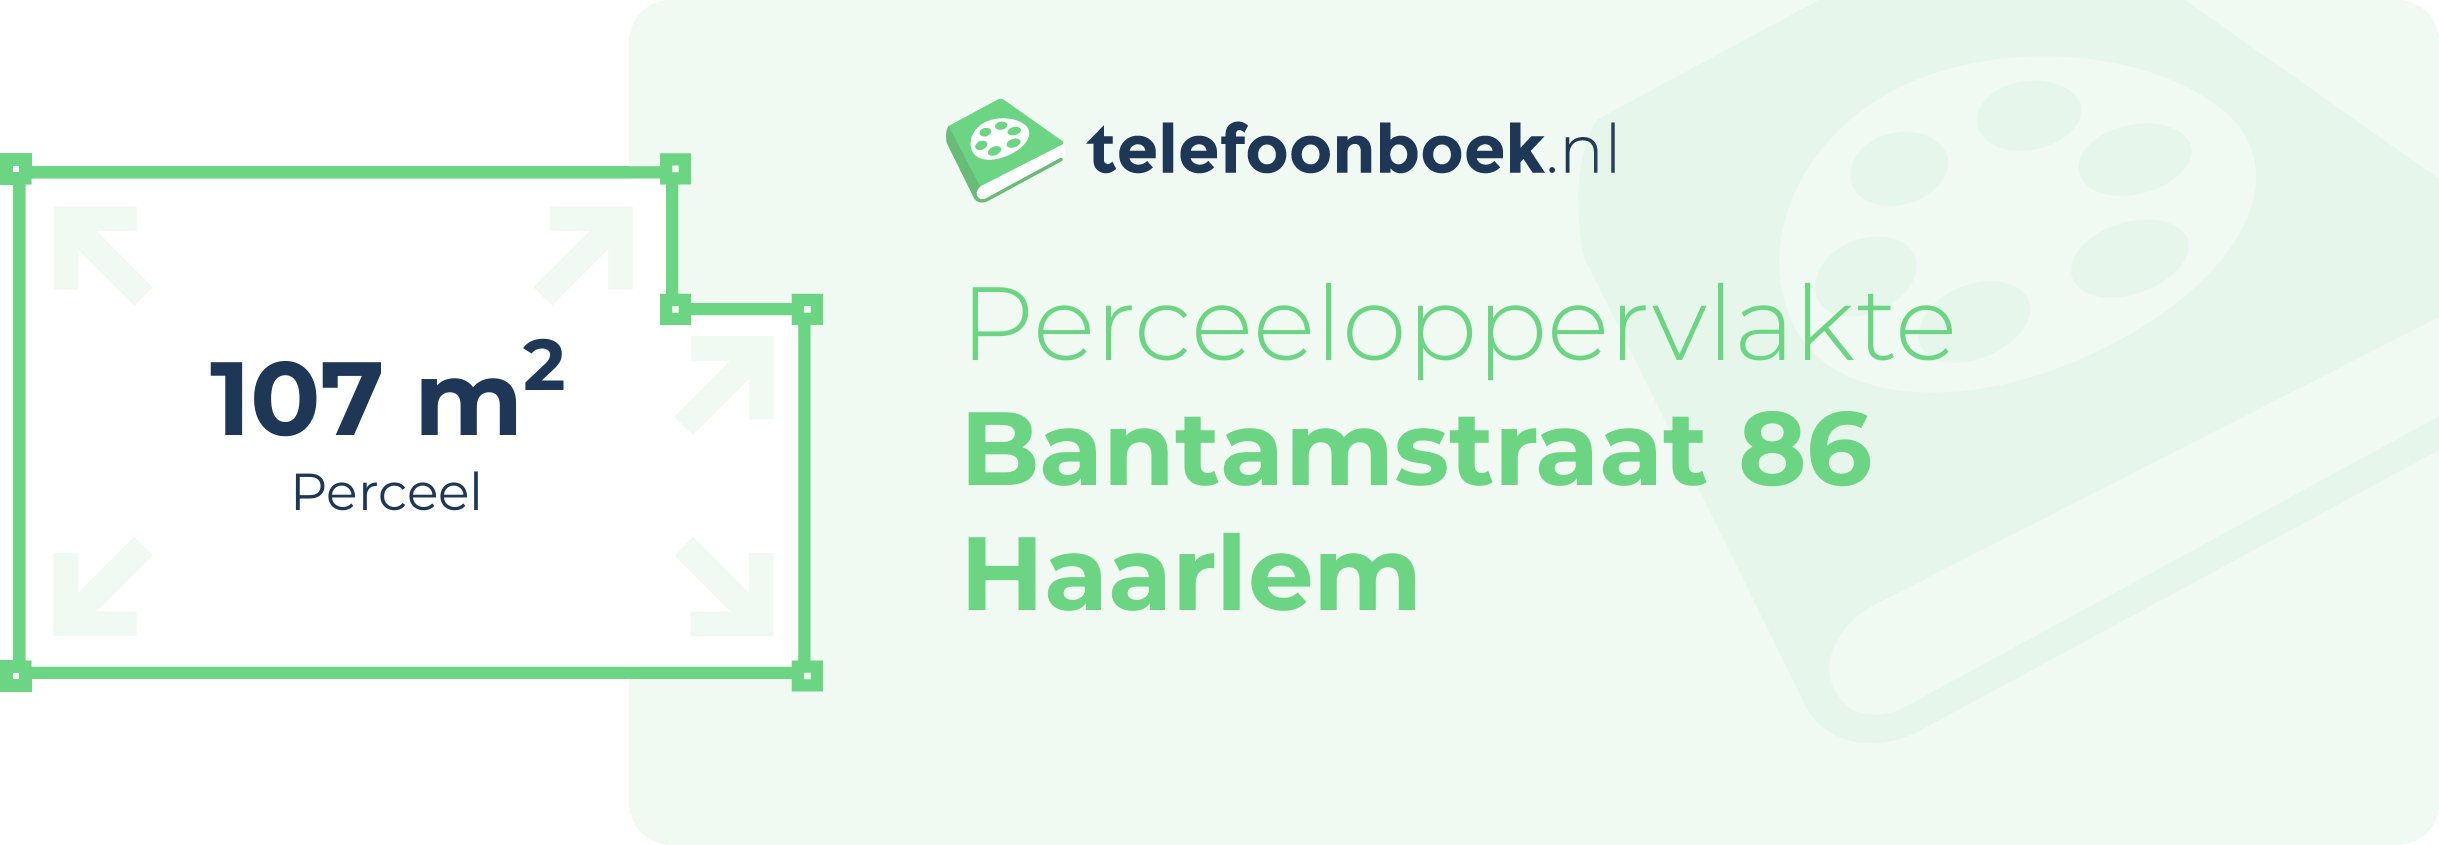 Perceeloppervlakte Bantamstraat 86 Haarlem